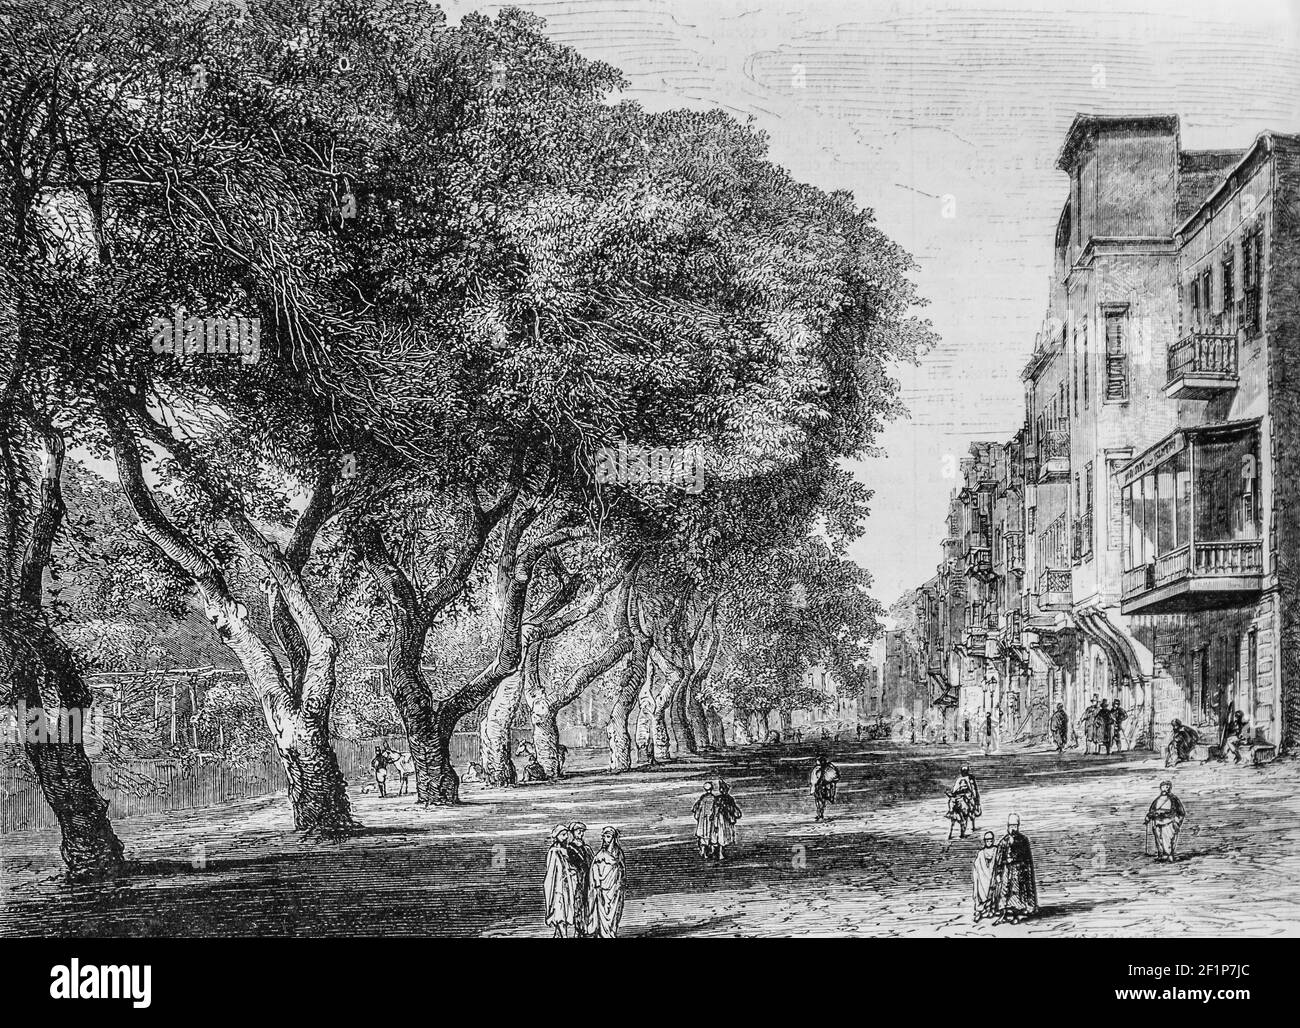 egypte la Place d'esbekieh au caire, l'univers illuste,editeur michele Levy 1869 Stockfoto